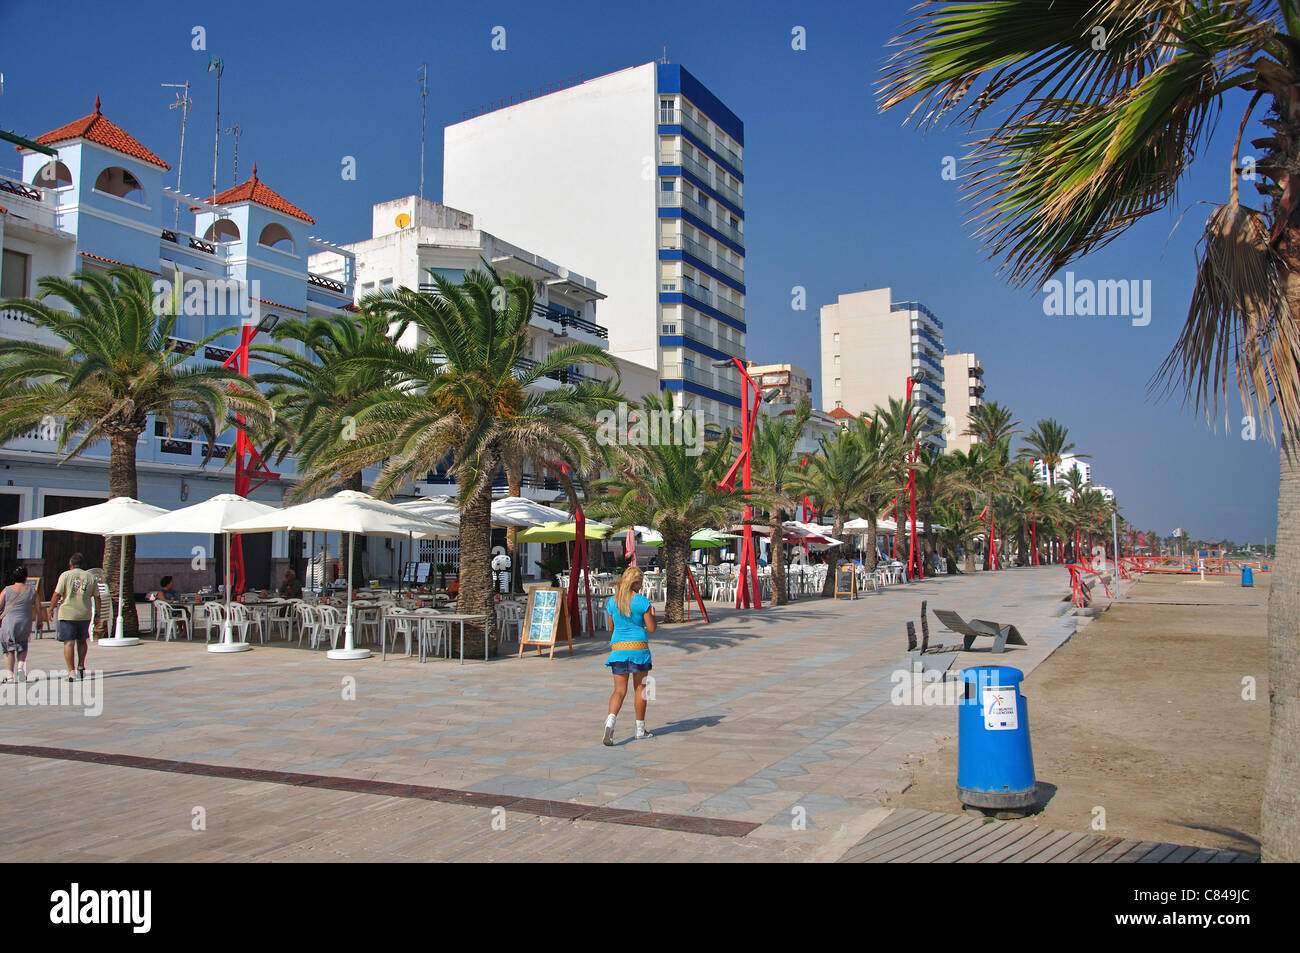 Par la promenade de la plage Platja del Forti, Vinaròs, Costa del Azahar, Province de Castellón, Communauté Valencienne, Espagne Banque D'Images